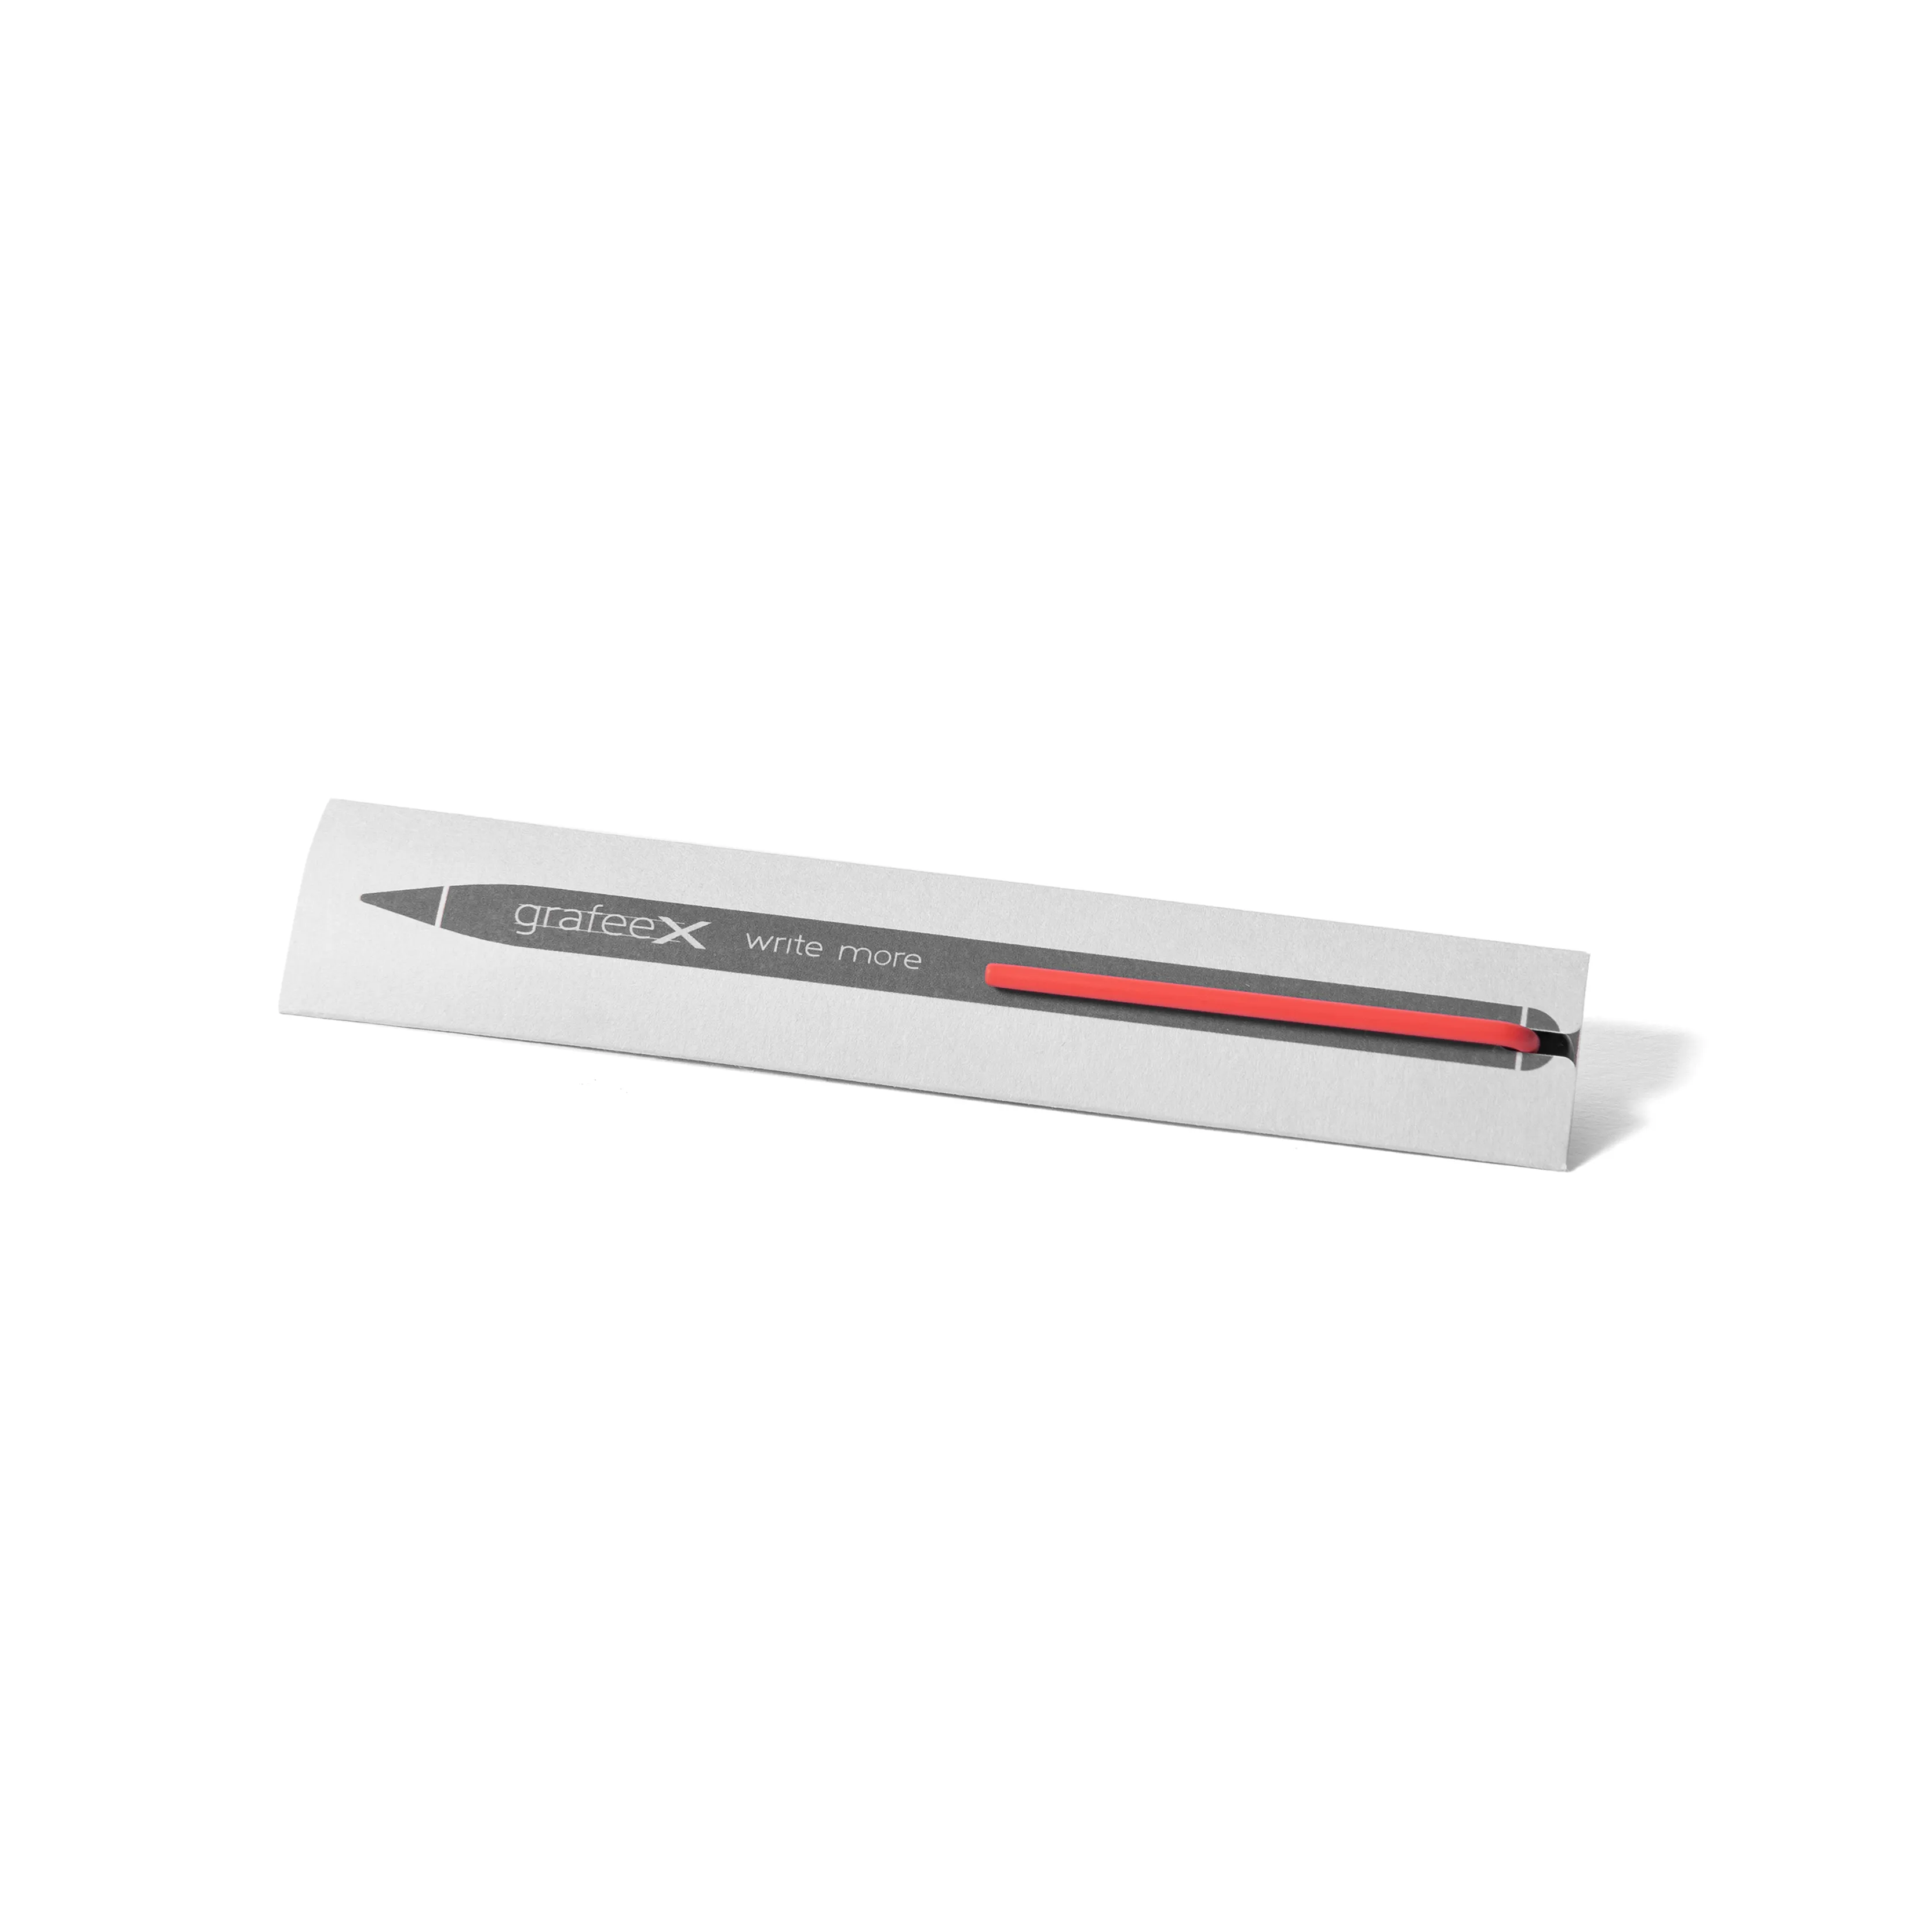 新しいデザインのインクレスペンアルミニウムGrafeex鉛筆イタリア製、カラーの赤いクリップとカスタムロゴがプロモーションギフトに最適